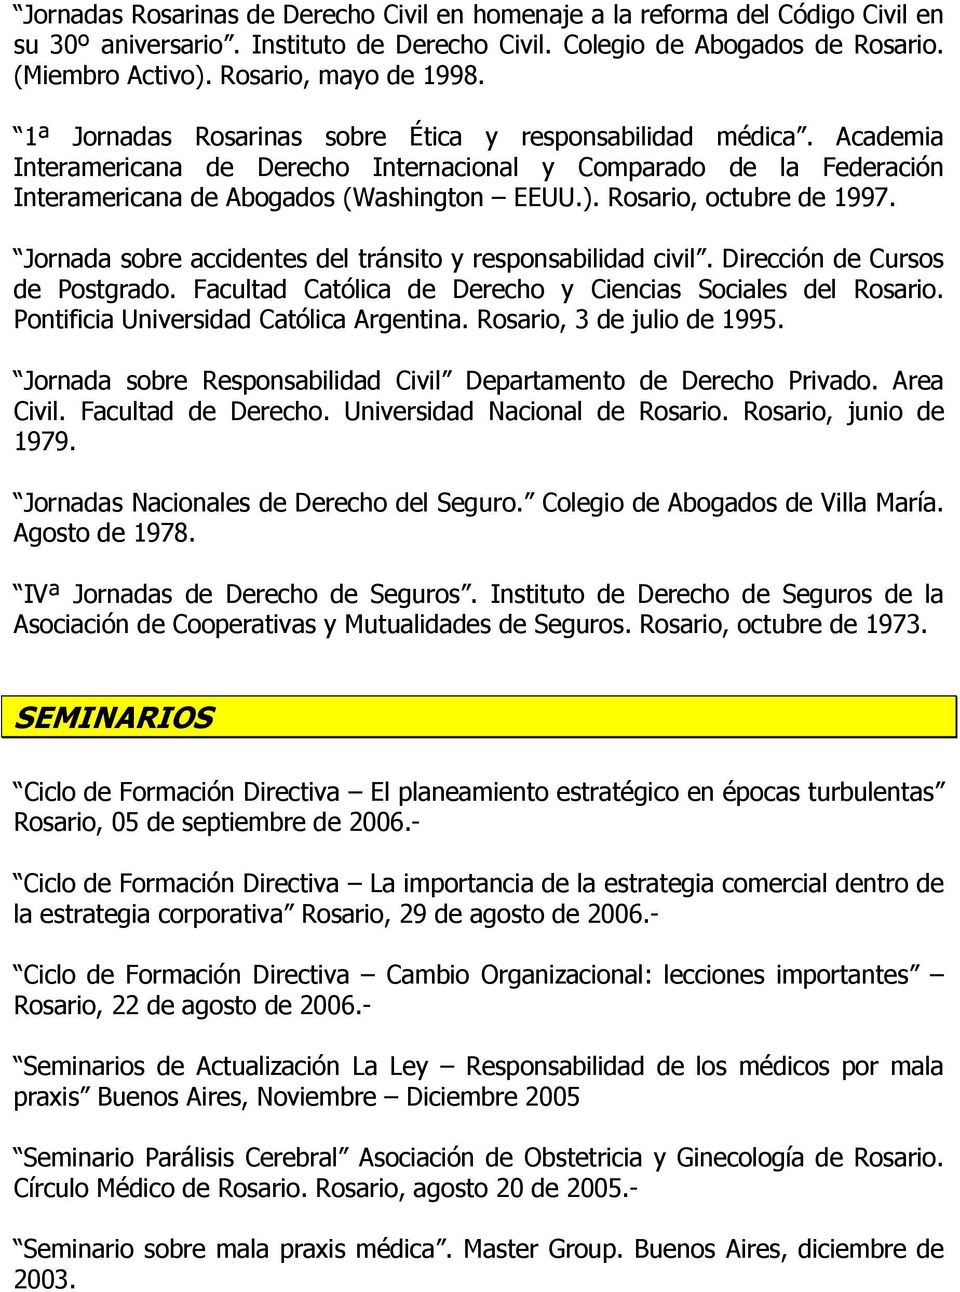 Academia Interamericana de Derecho Internacional y Comparado de la Federación Interamericana de Abogados (Washington EEUU.). Rosario, octubre de 1997.